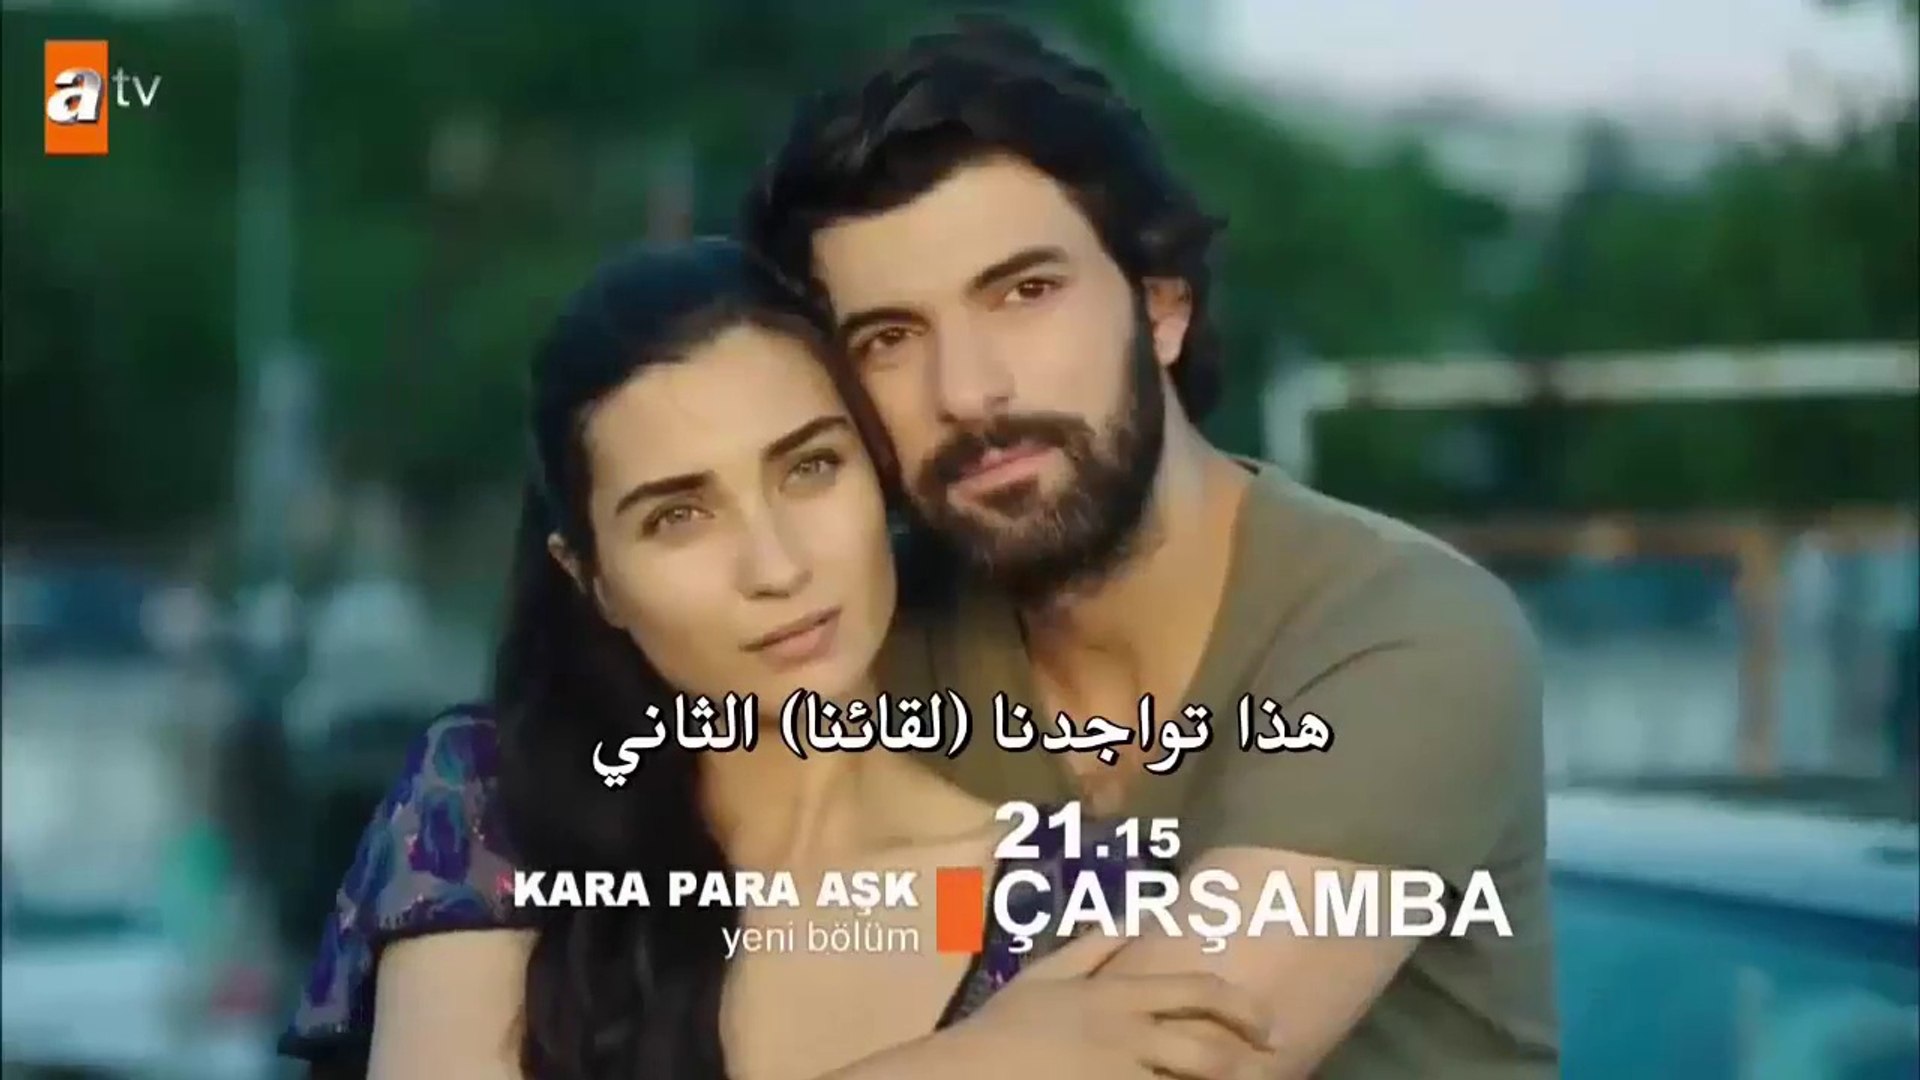 العشق المشبوه الجزء الثاني Kara Para Ask اعلان 2 الحلقة 38 مترجم للعربية Video Dailymotion